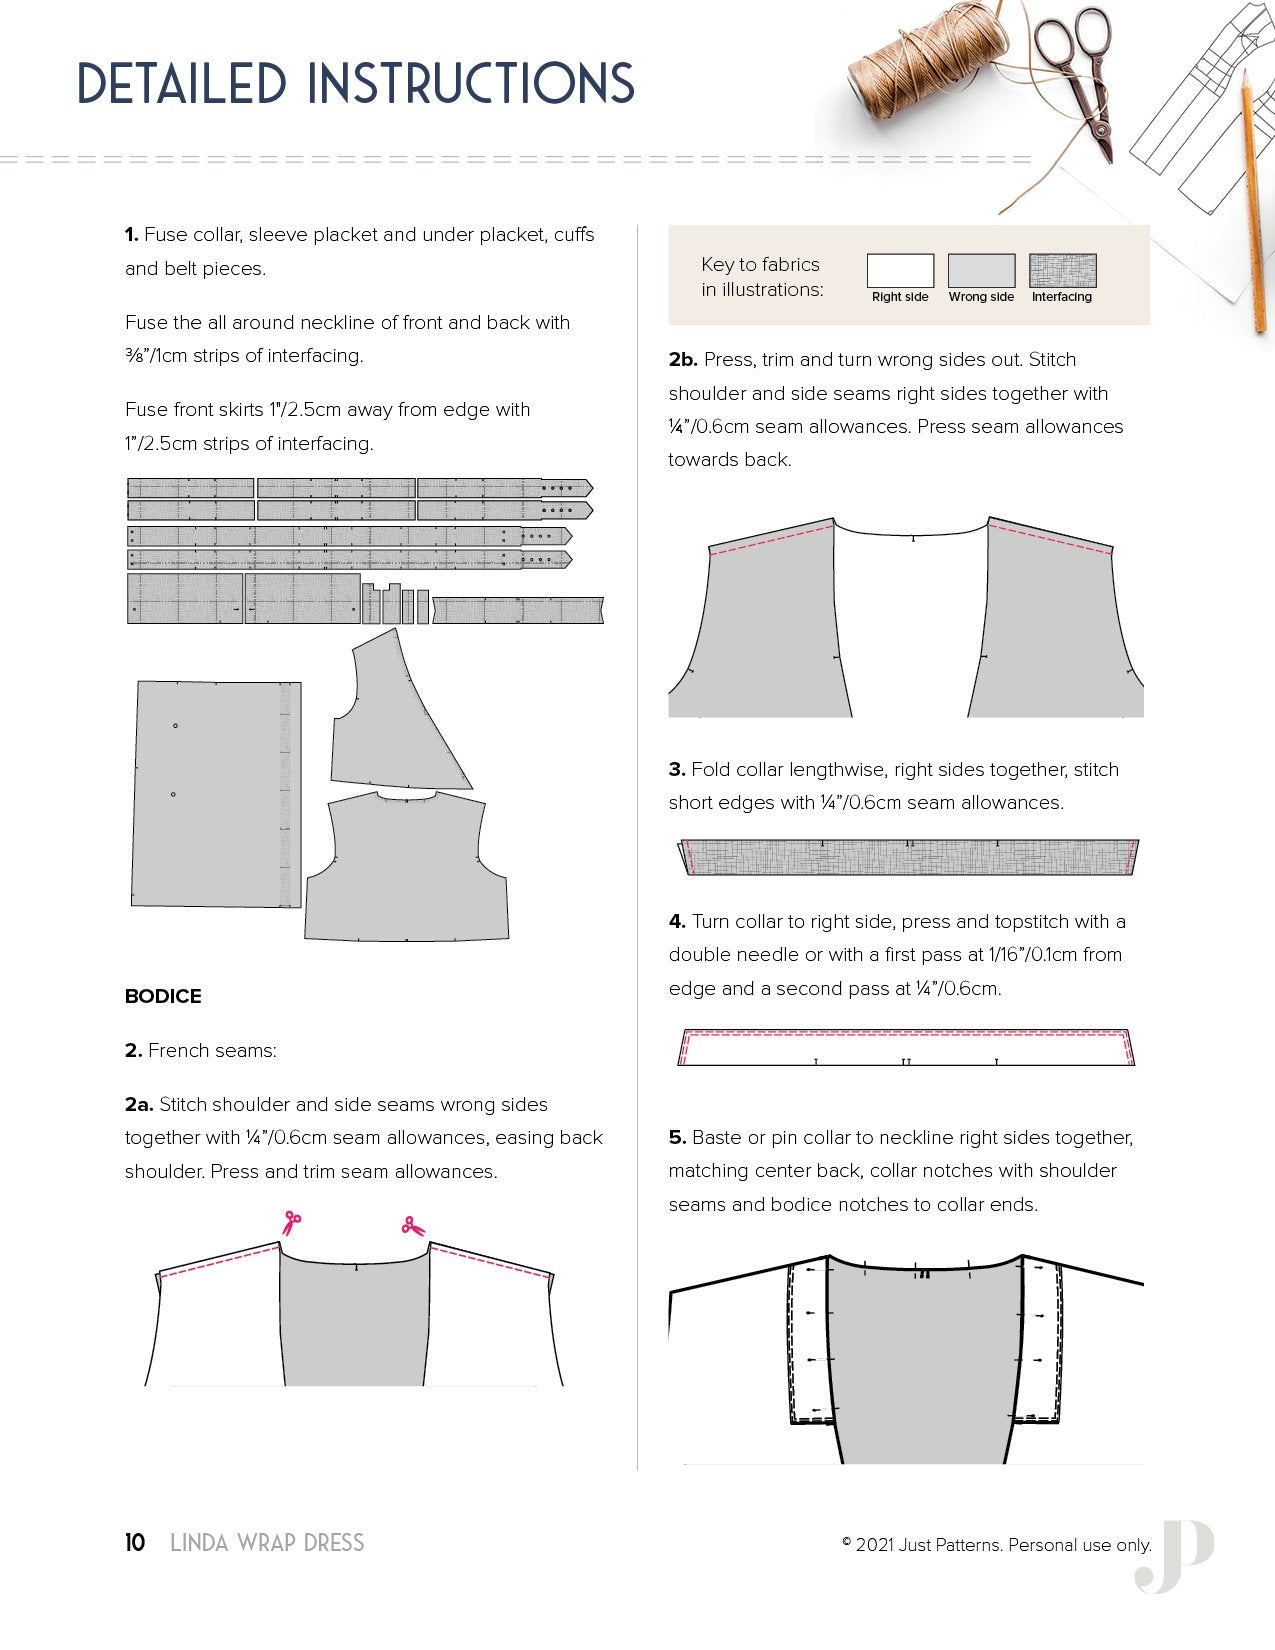 Linda Wrap Dress - PDF Sewing Pattern